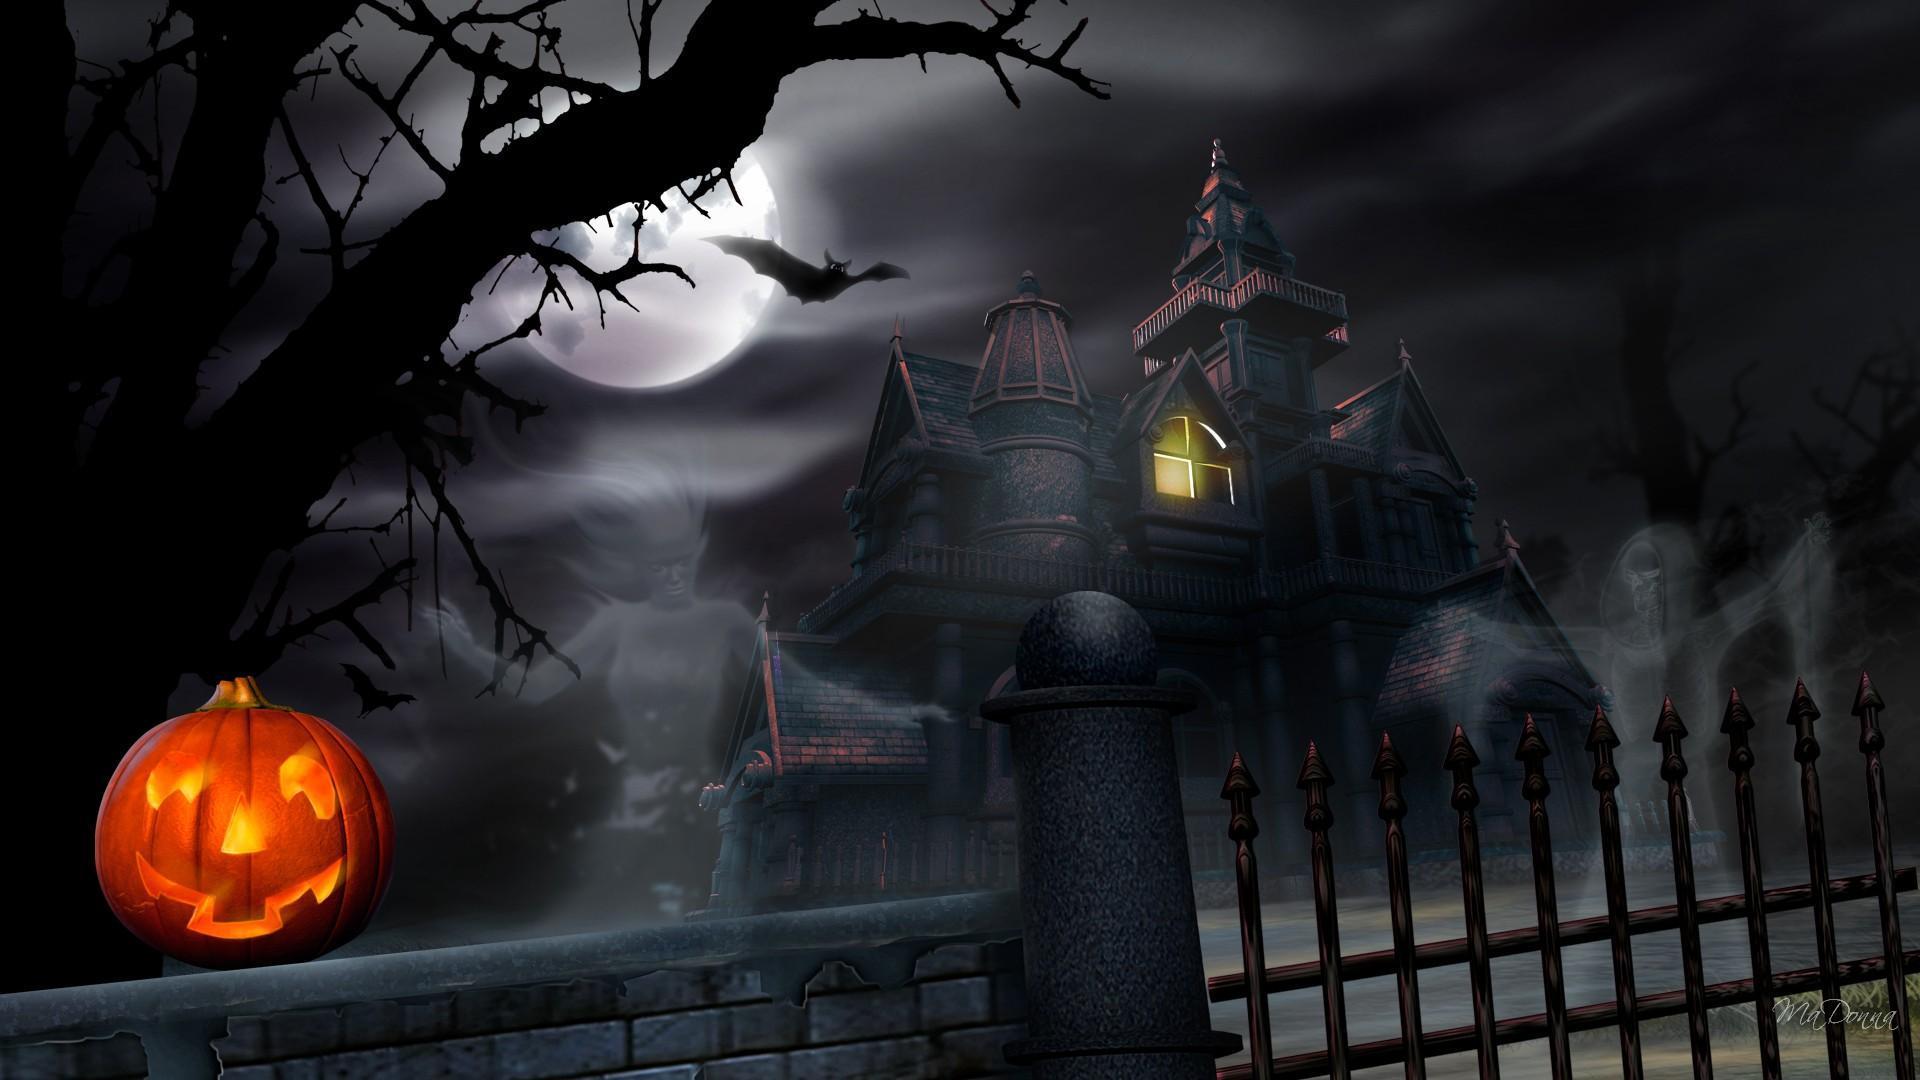 Haunted Halloween House HD desktop wallpaper, Widescreen, High